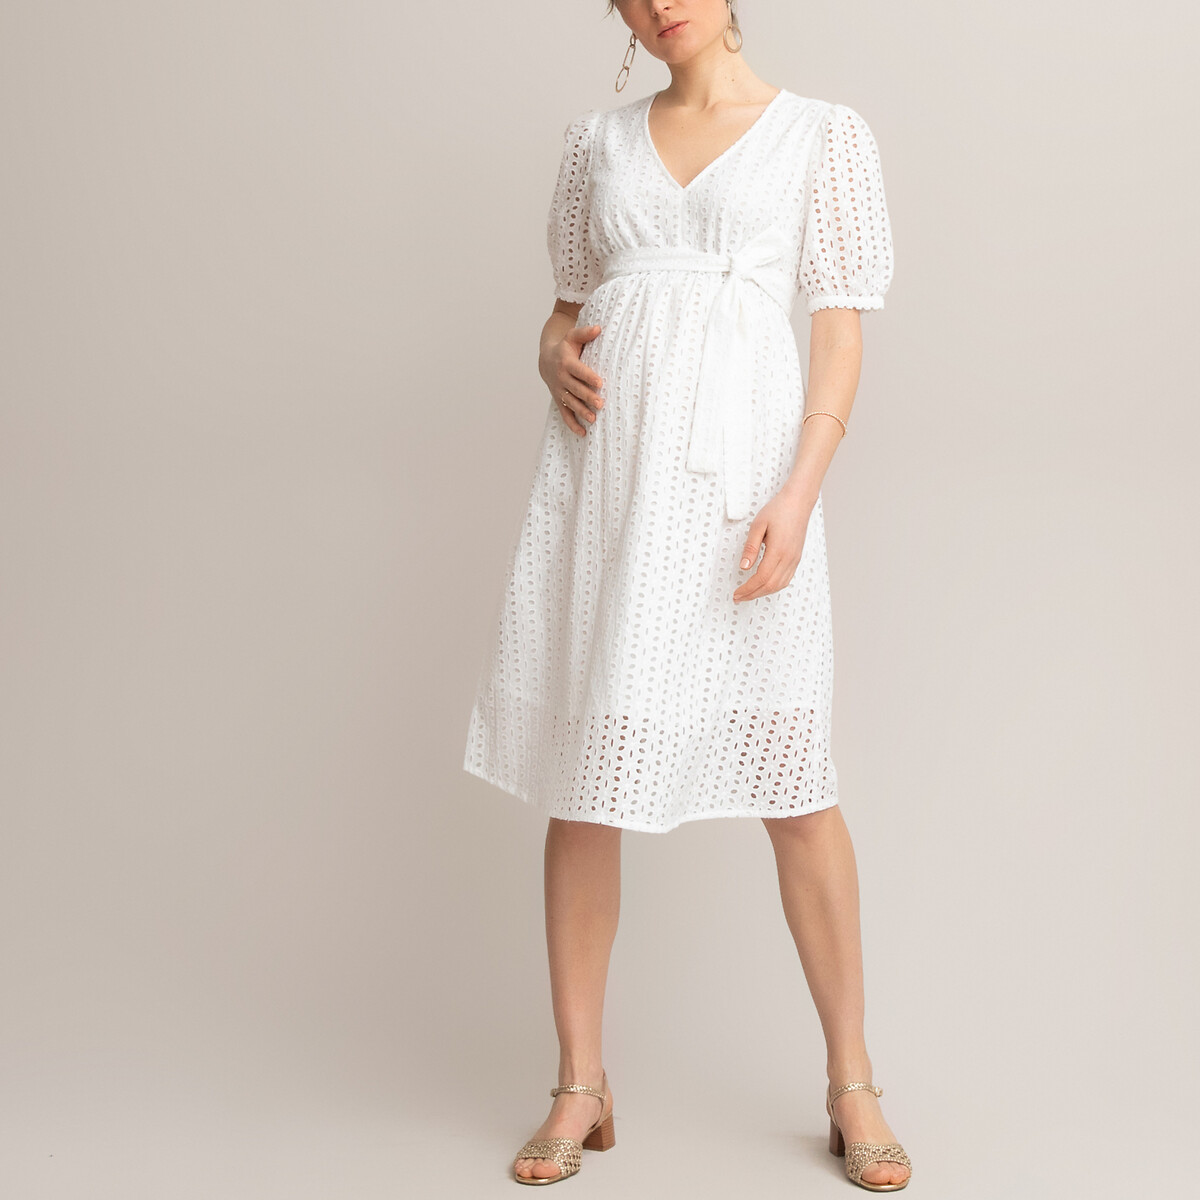 Платье LaRedoute Для периода беременности с ремешком из английской вышивки 46 (FR) - 52 (RUS) белый, размер 46 (FR) - 52 (RUS) Для периода беременности с ремешком из английской вышивки 46 (FR) - 52 (RUS) белый - фото 1